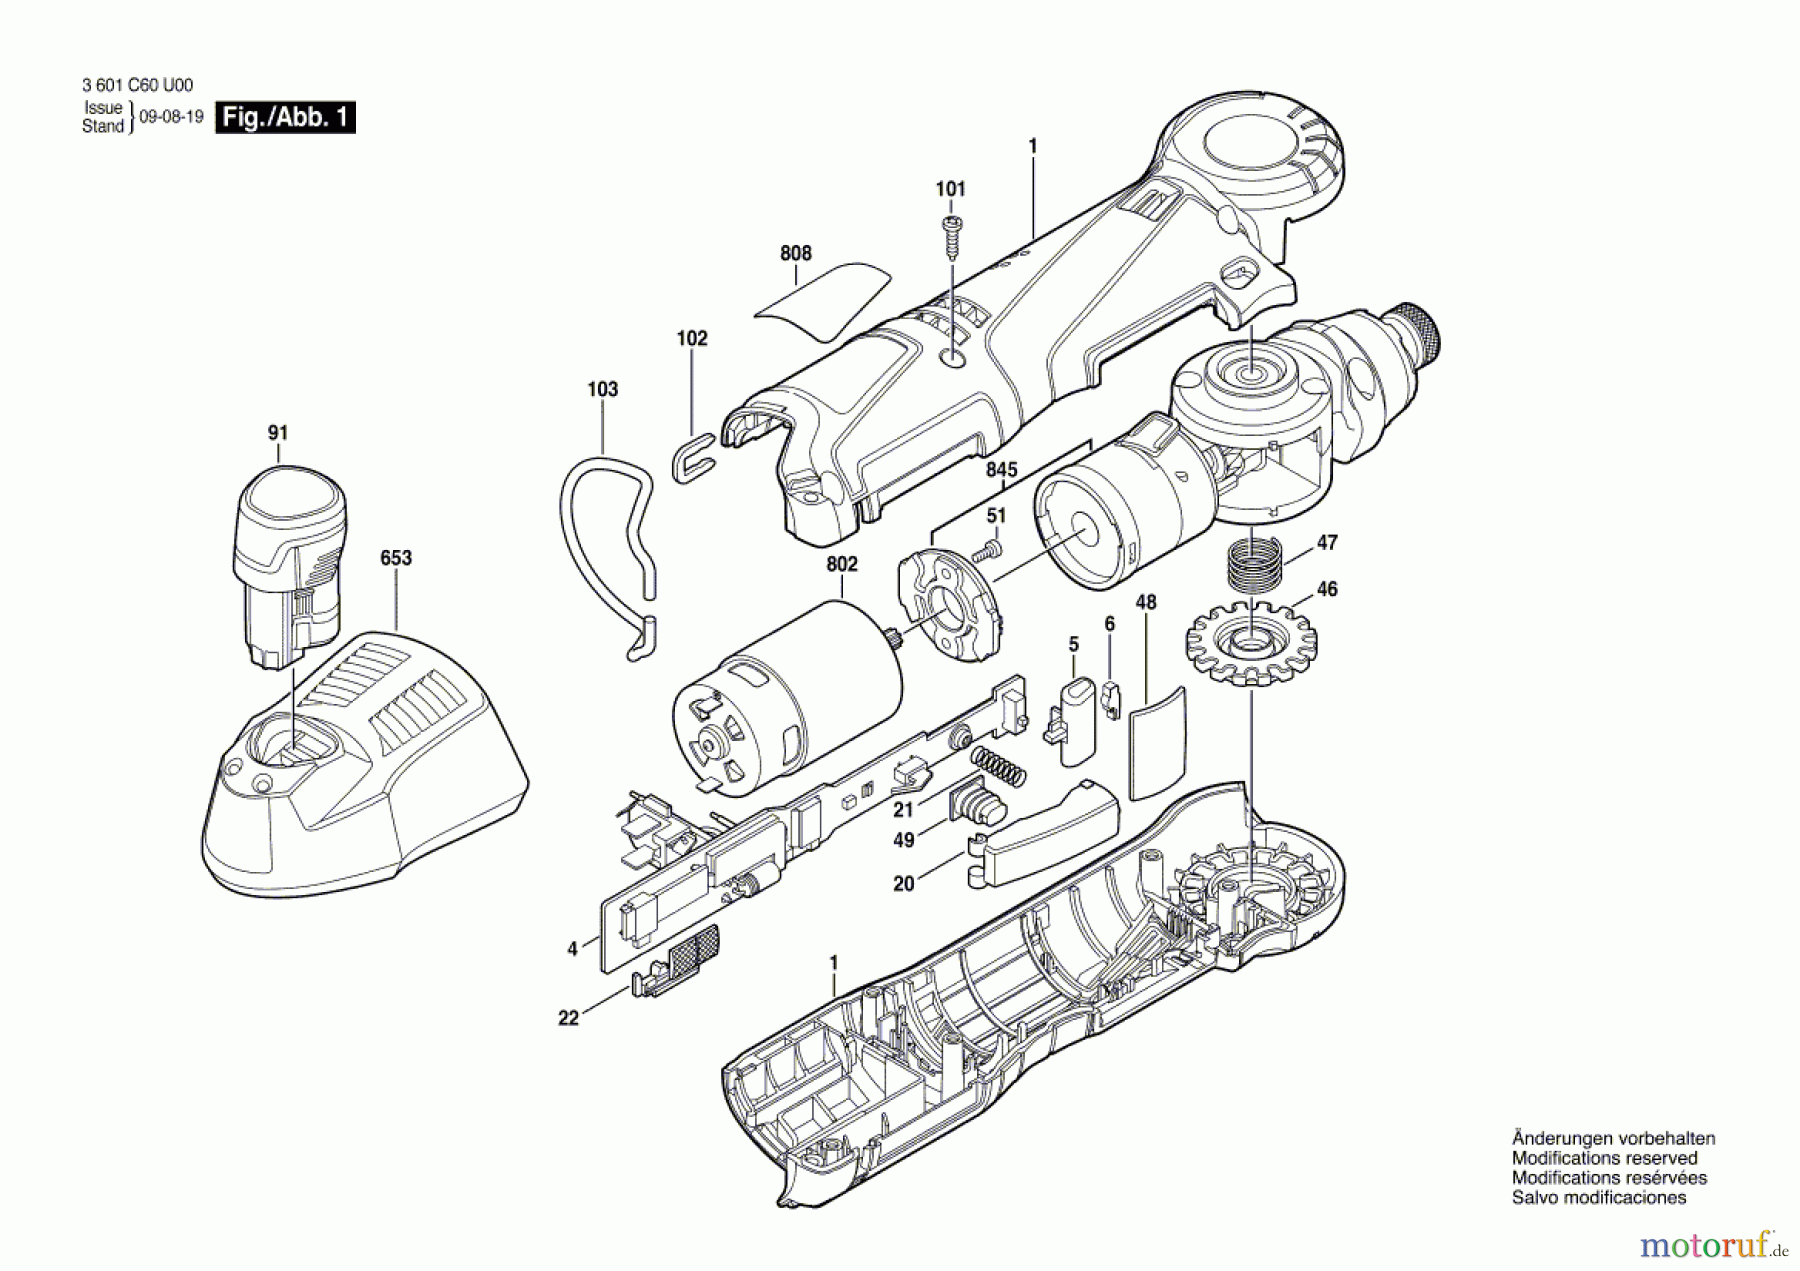  Bosch Werkzeug Winkelschrauber GWI 12V-5 Seite 1